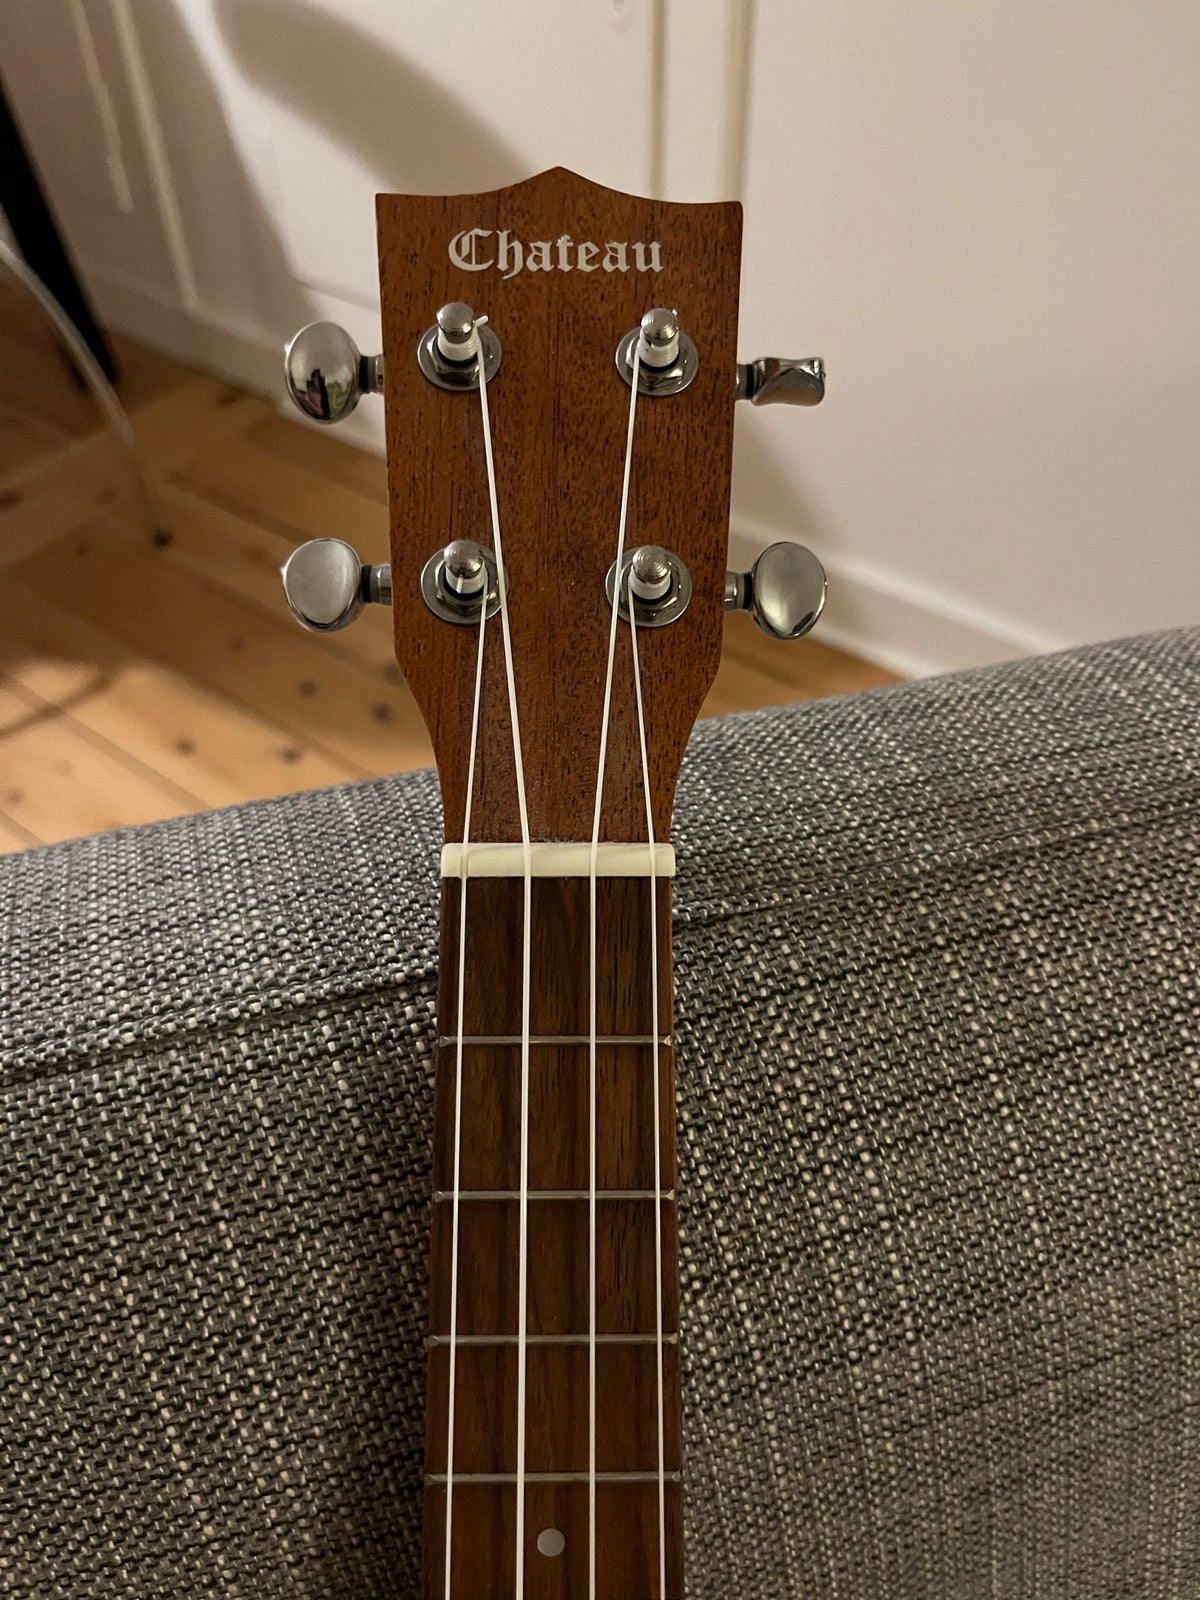 Tenor ukulele, Chateau C08-U2300